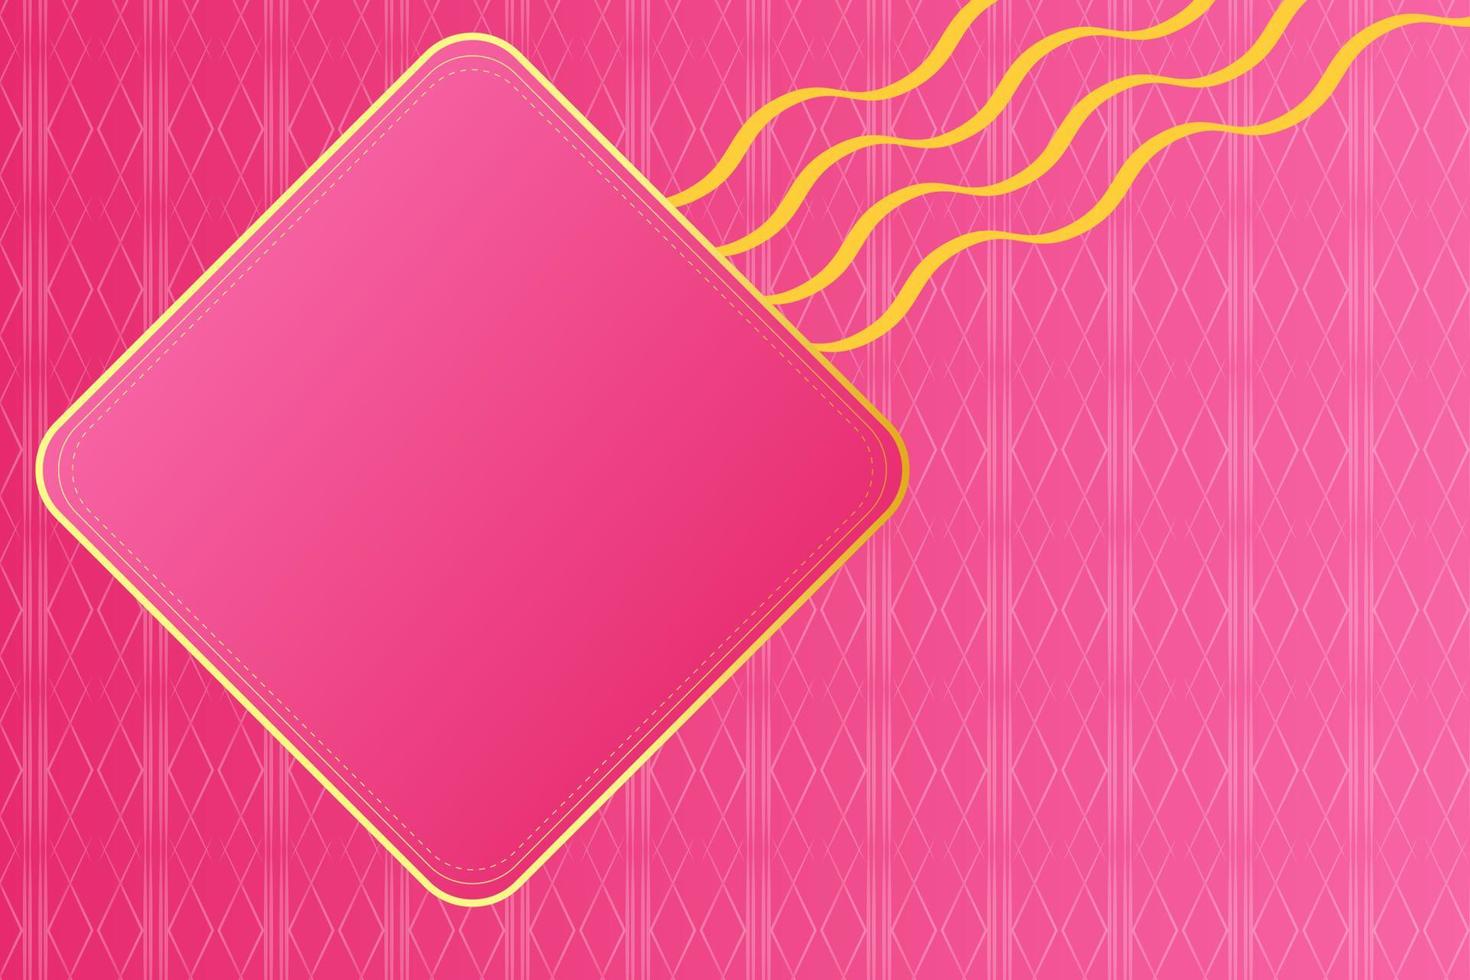 moderner luxus abstrakter hintergrund mit goldenen linienelementen. moderner rosa hintergrund für design vektor